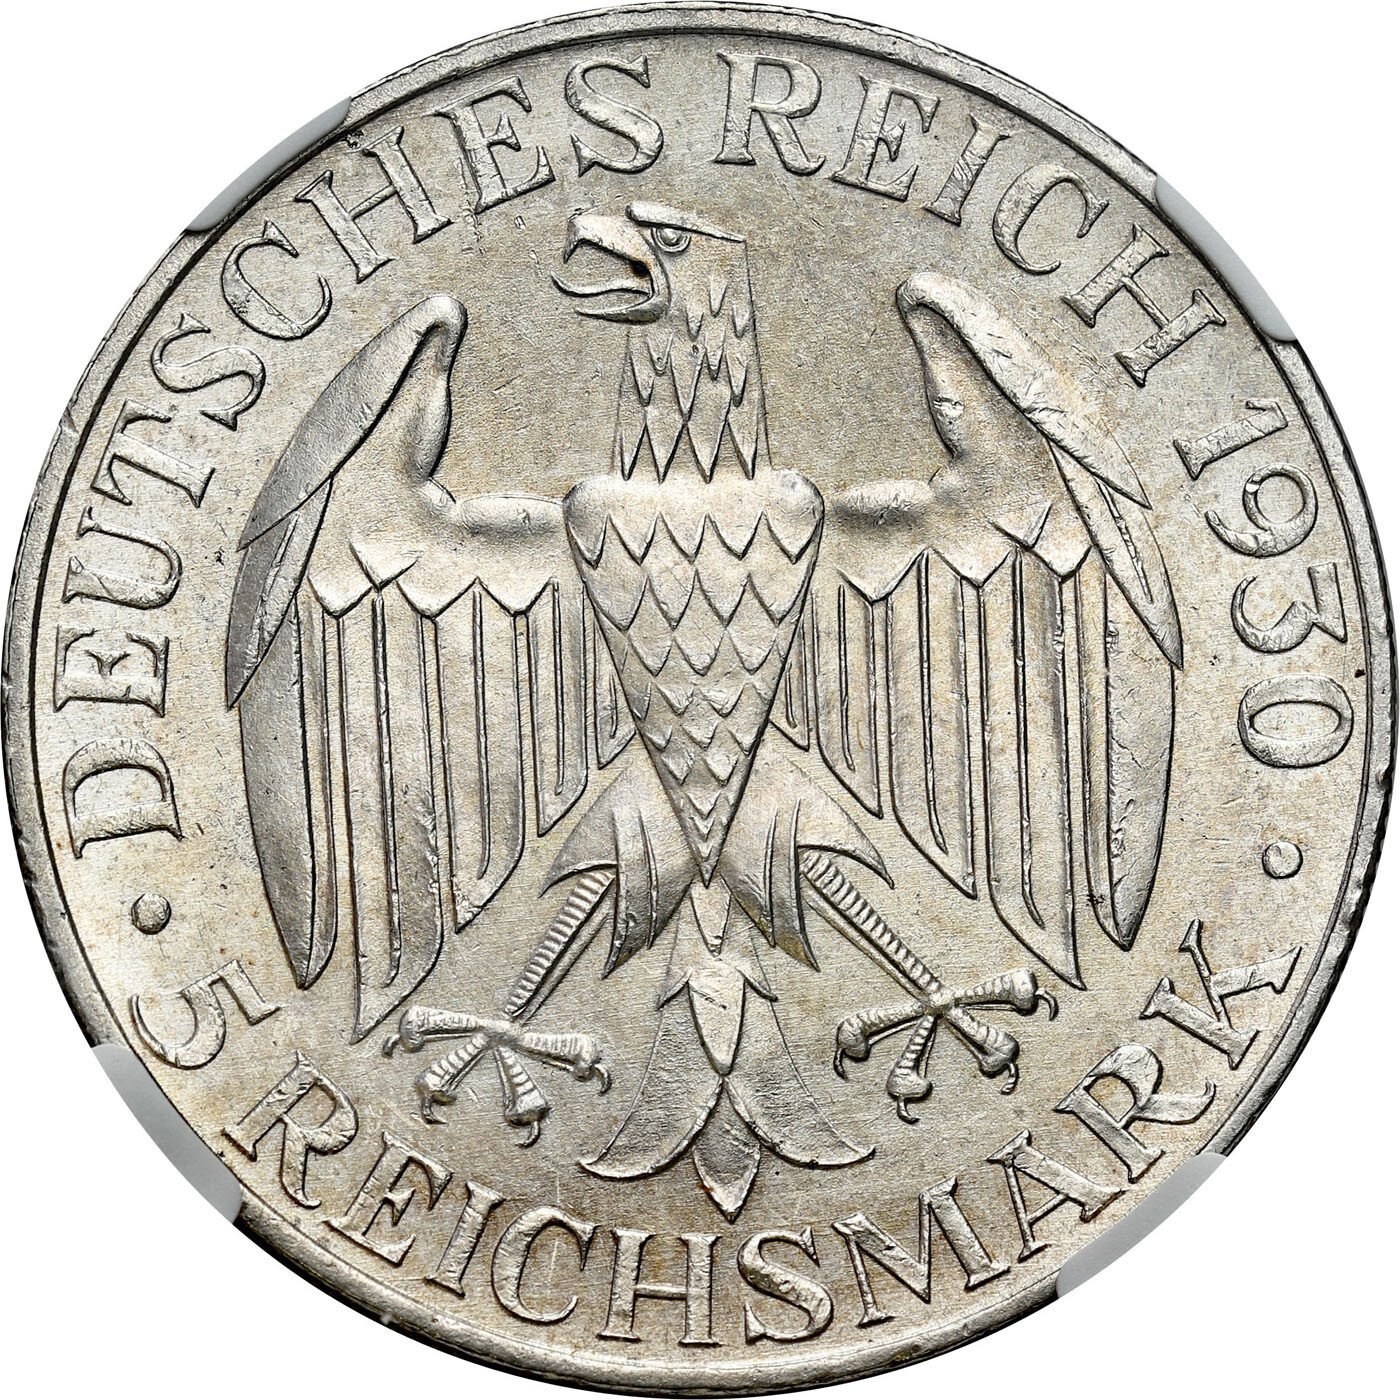 Niemcy, Weimar. 5 Marek 1930 A, Berlin - Zeppelin NGC MS63 - WYŚMIENITE